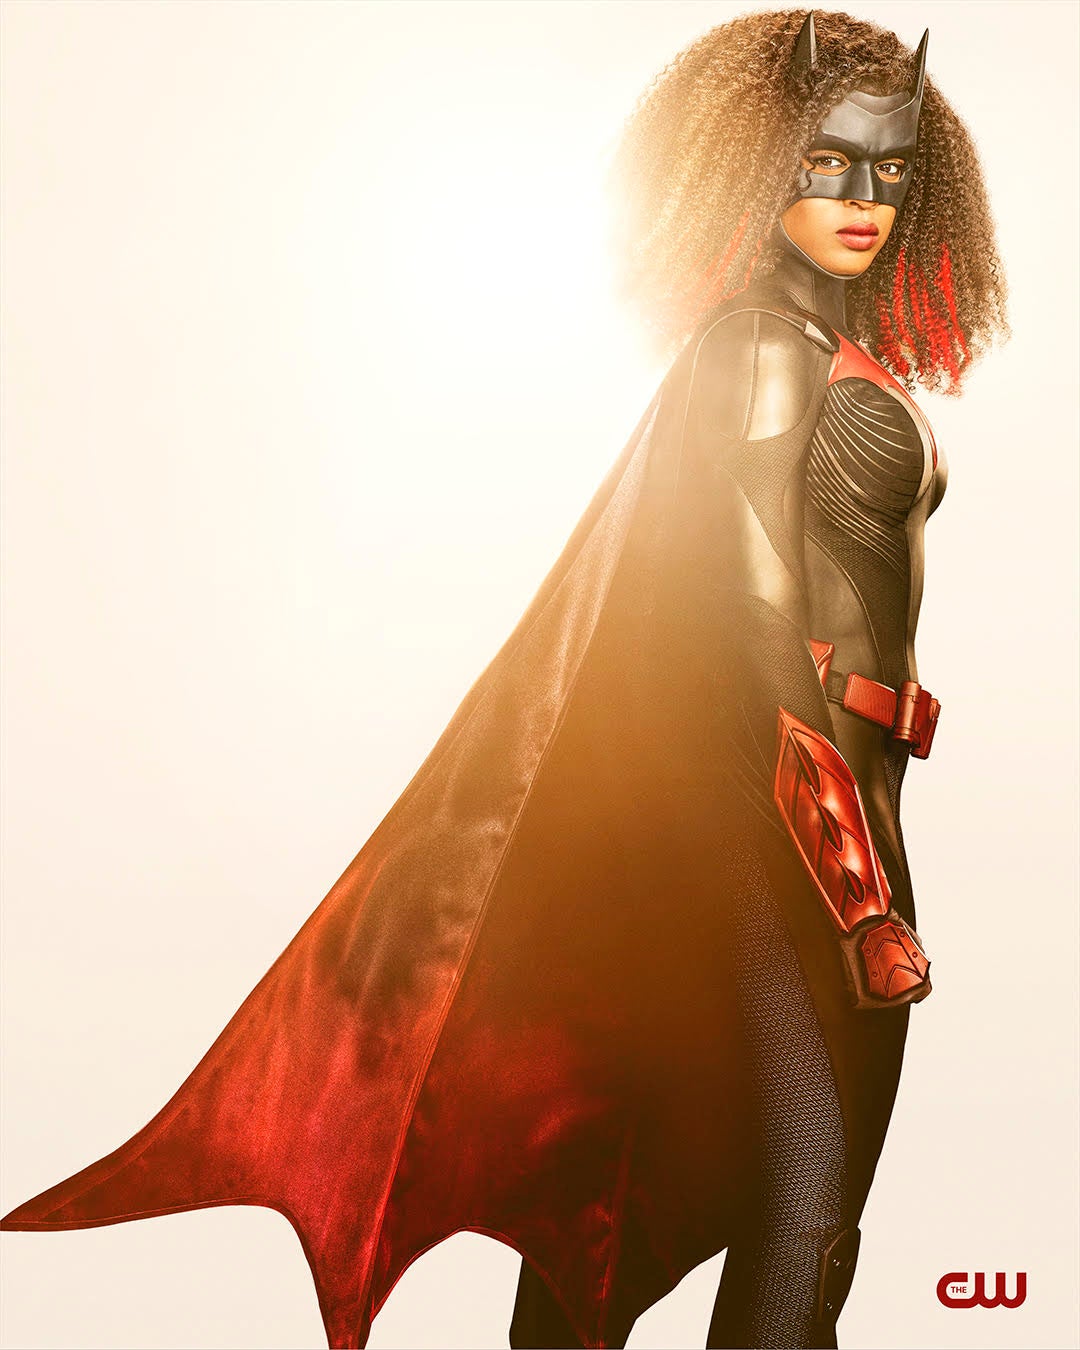 Javicia Leslie&#039;s new Batwoman suit is superhero outfit goals